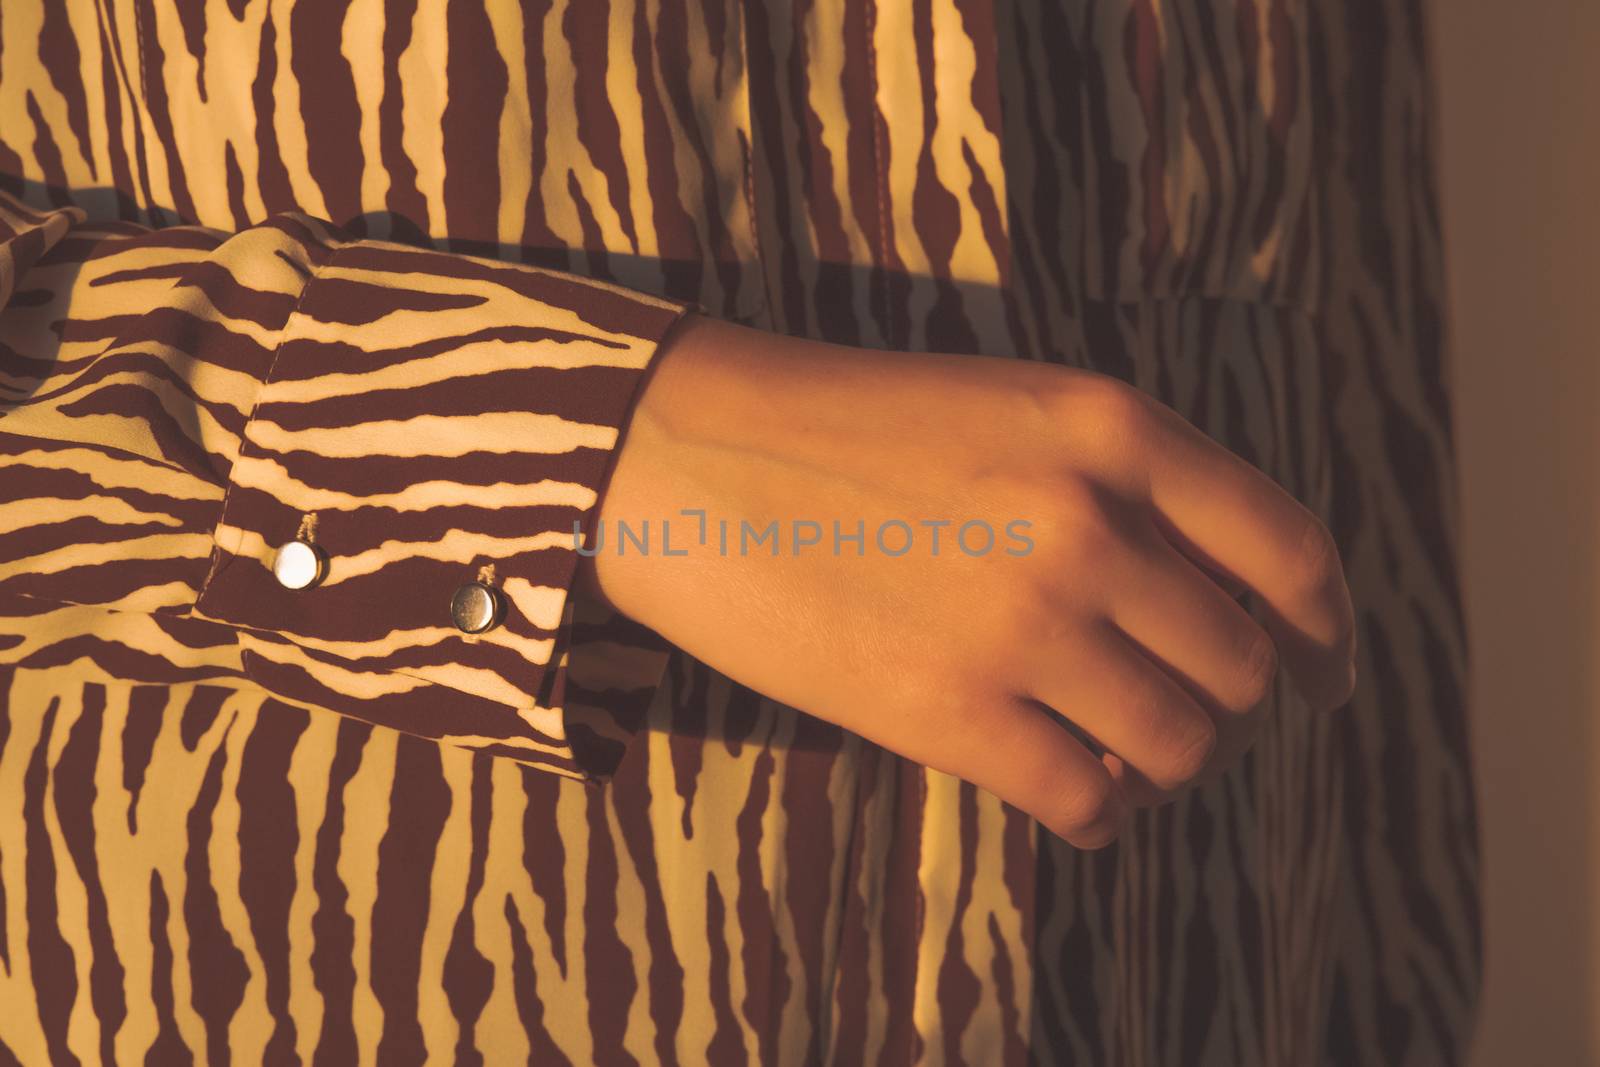 Human hand in evening sun, stylish shirt by photoboyko